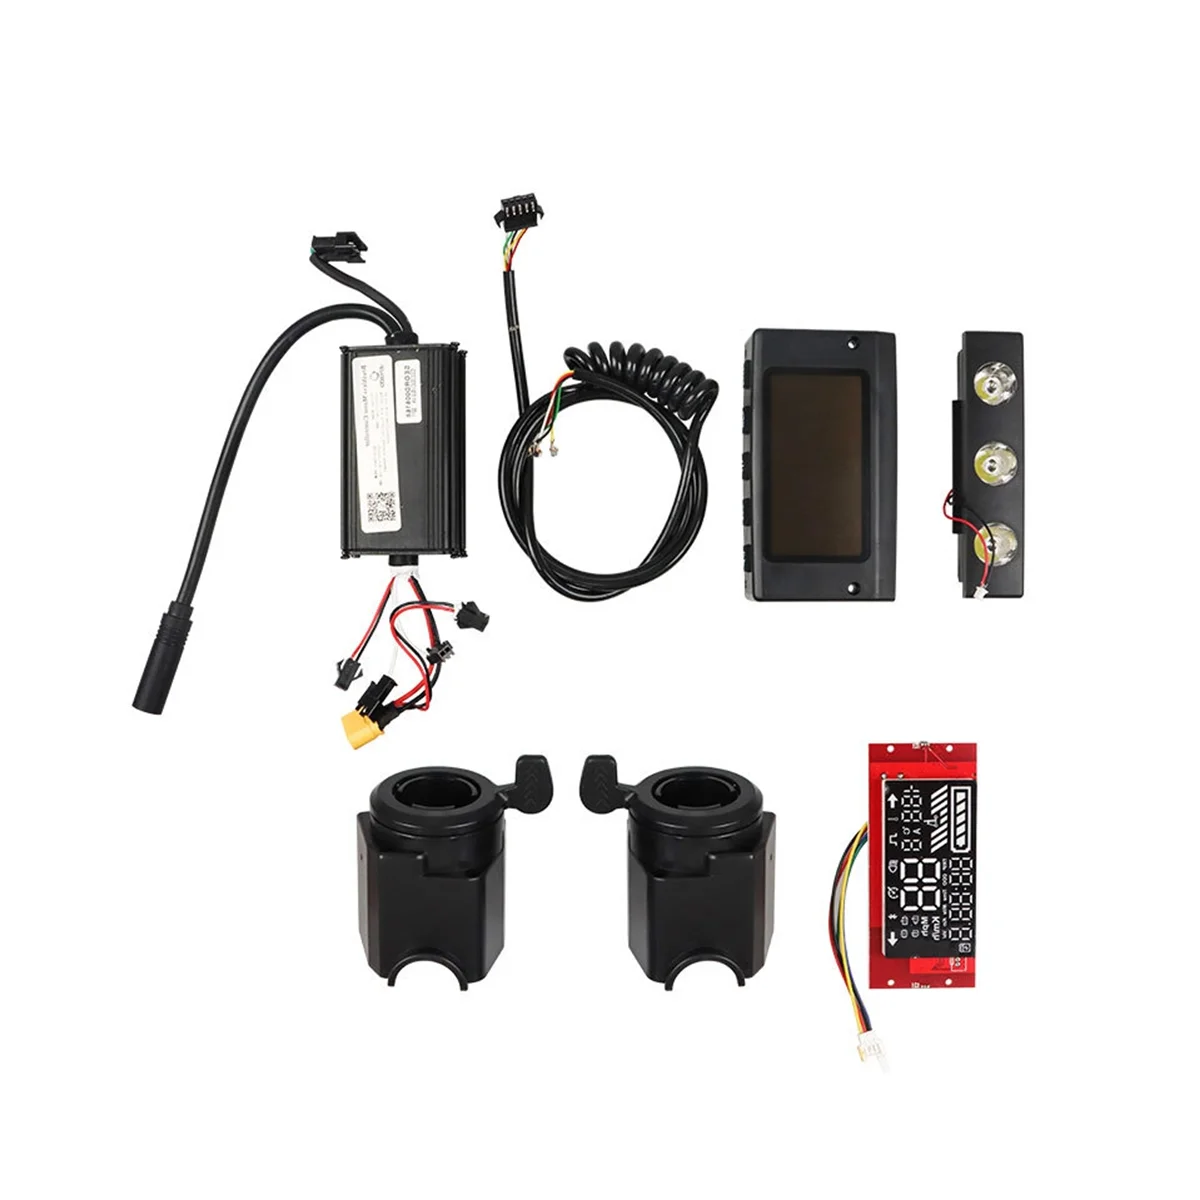 

Контроллер запчастей для электрического скутера, набор индикаторов, полноразмерные компоненты оборудования электромобиля